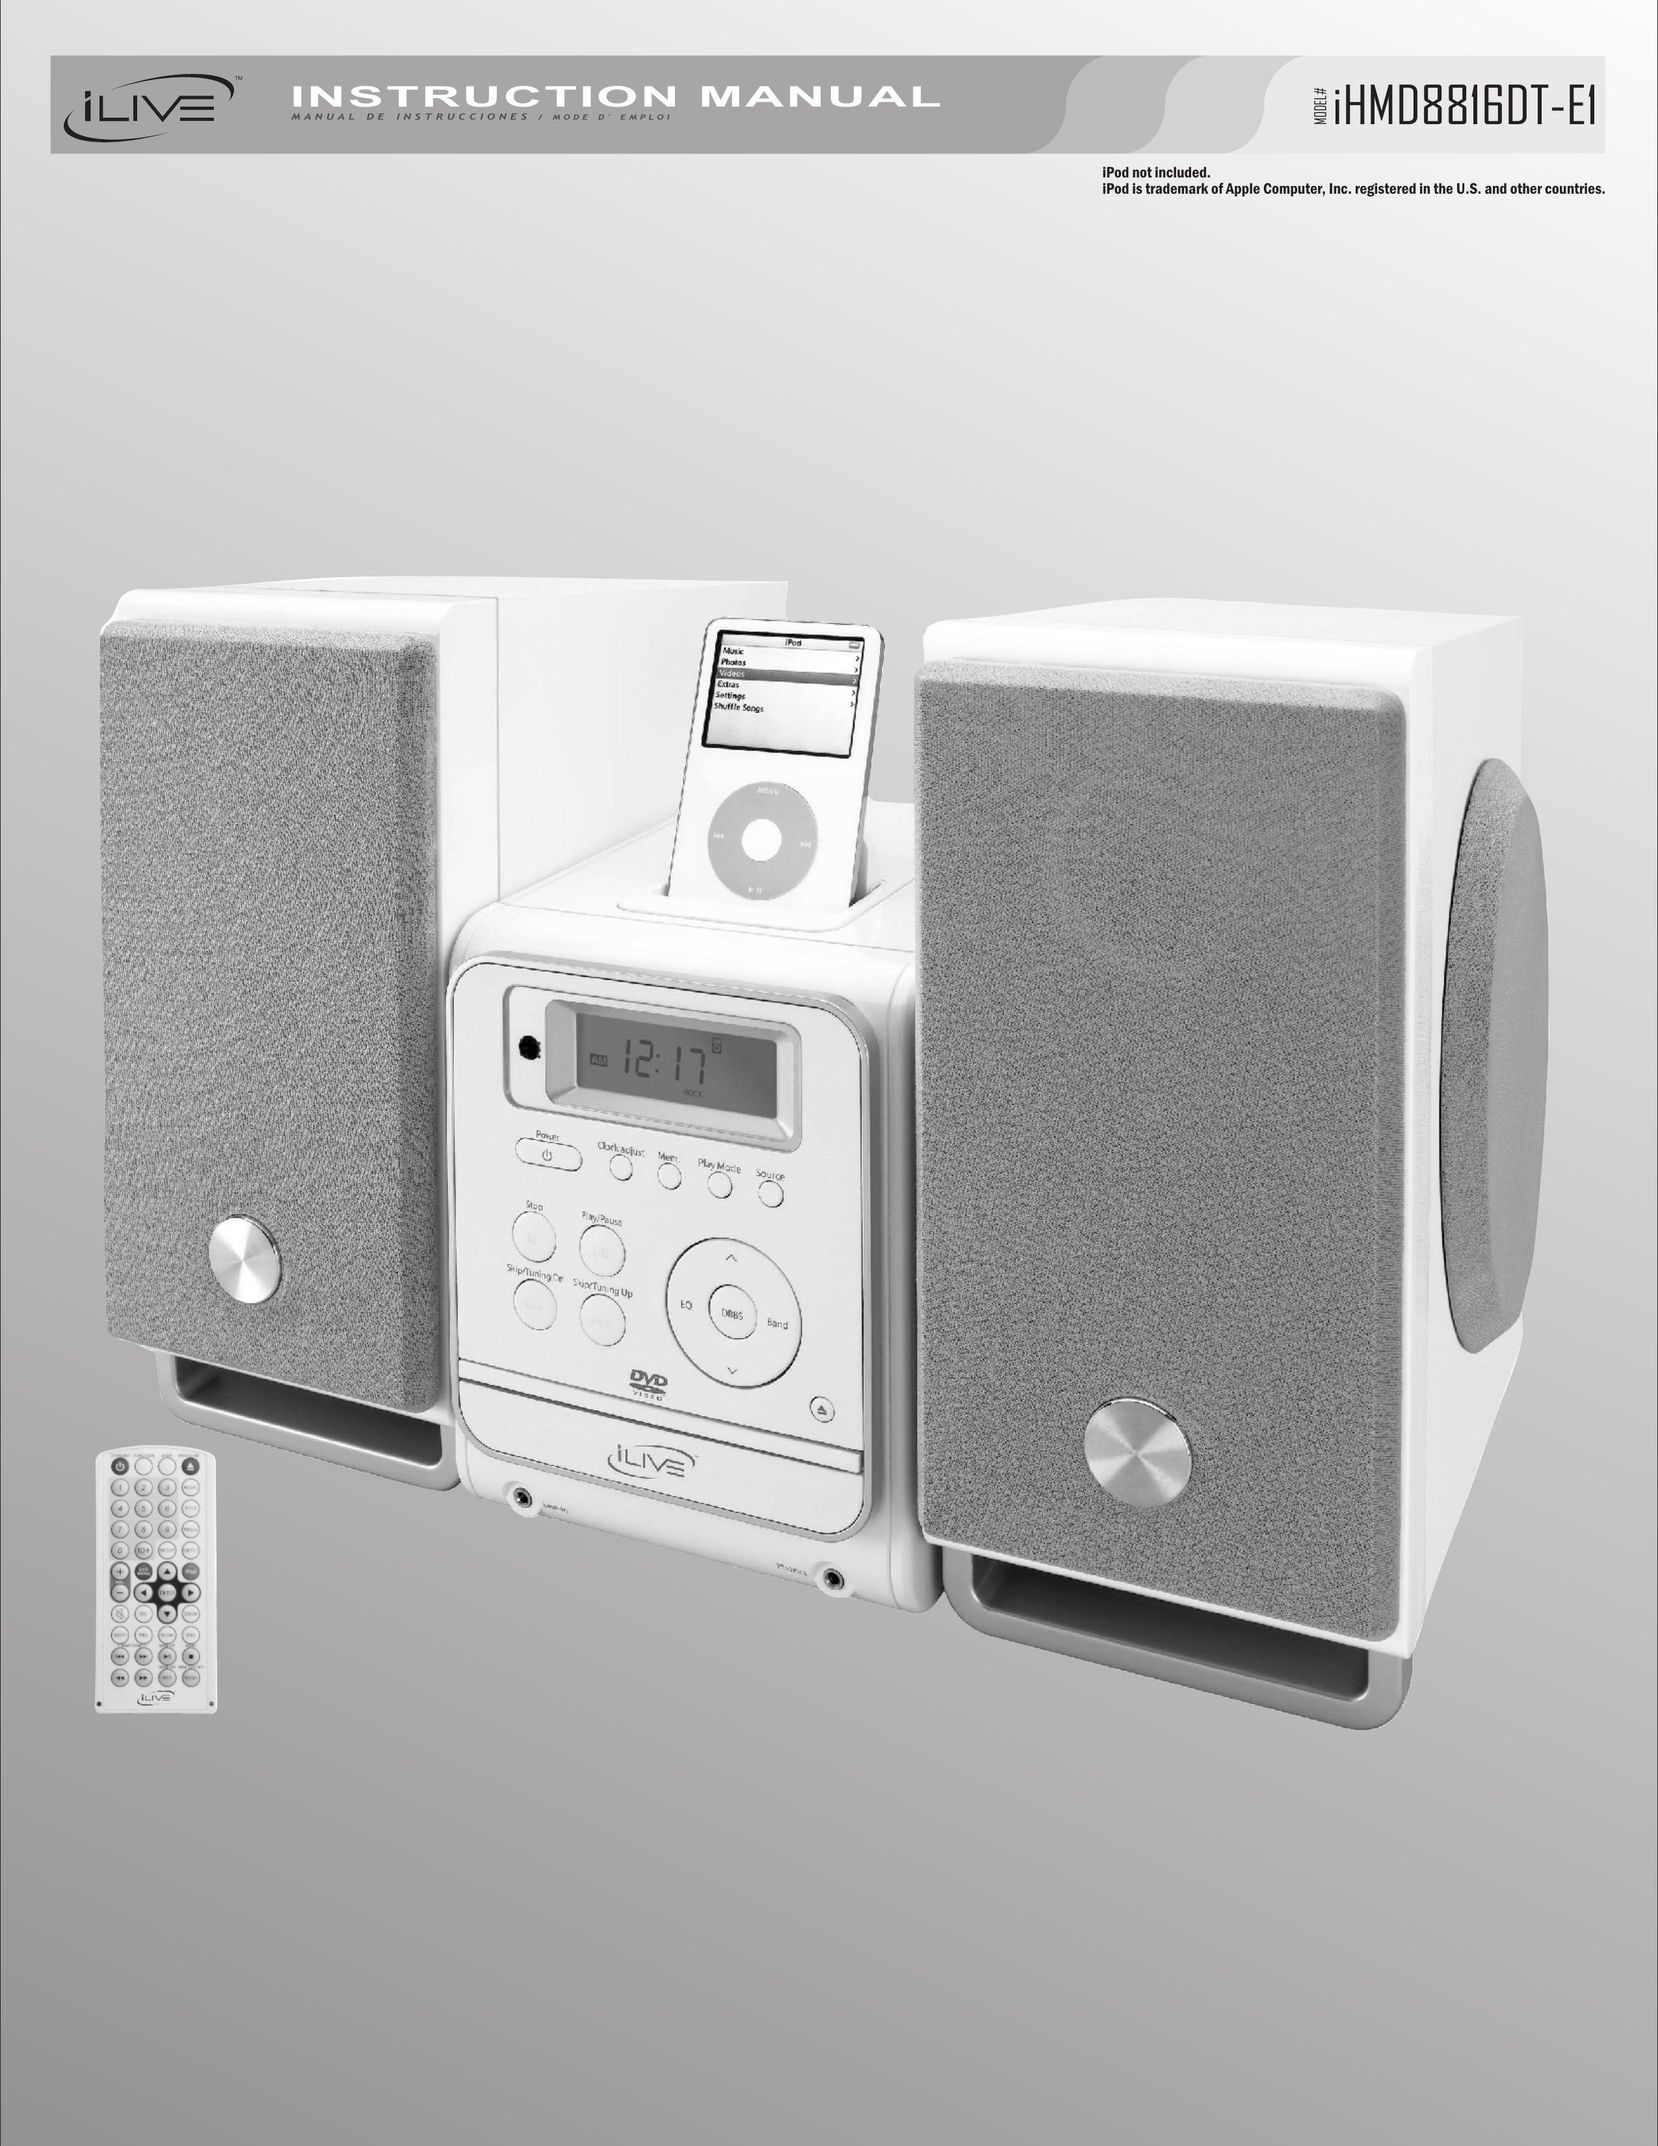 iLive iHMD8816DT-E1 Speaker System User Manual